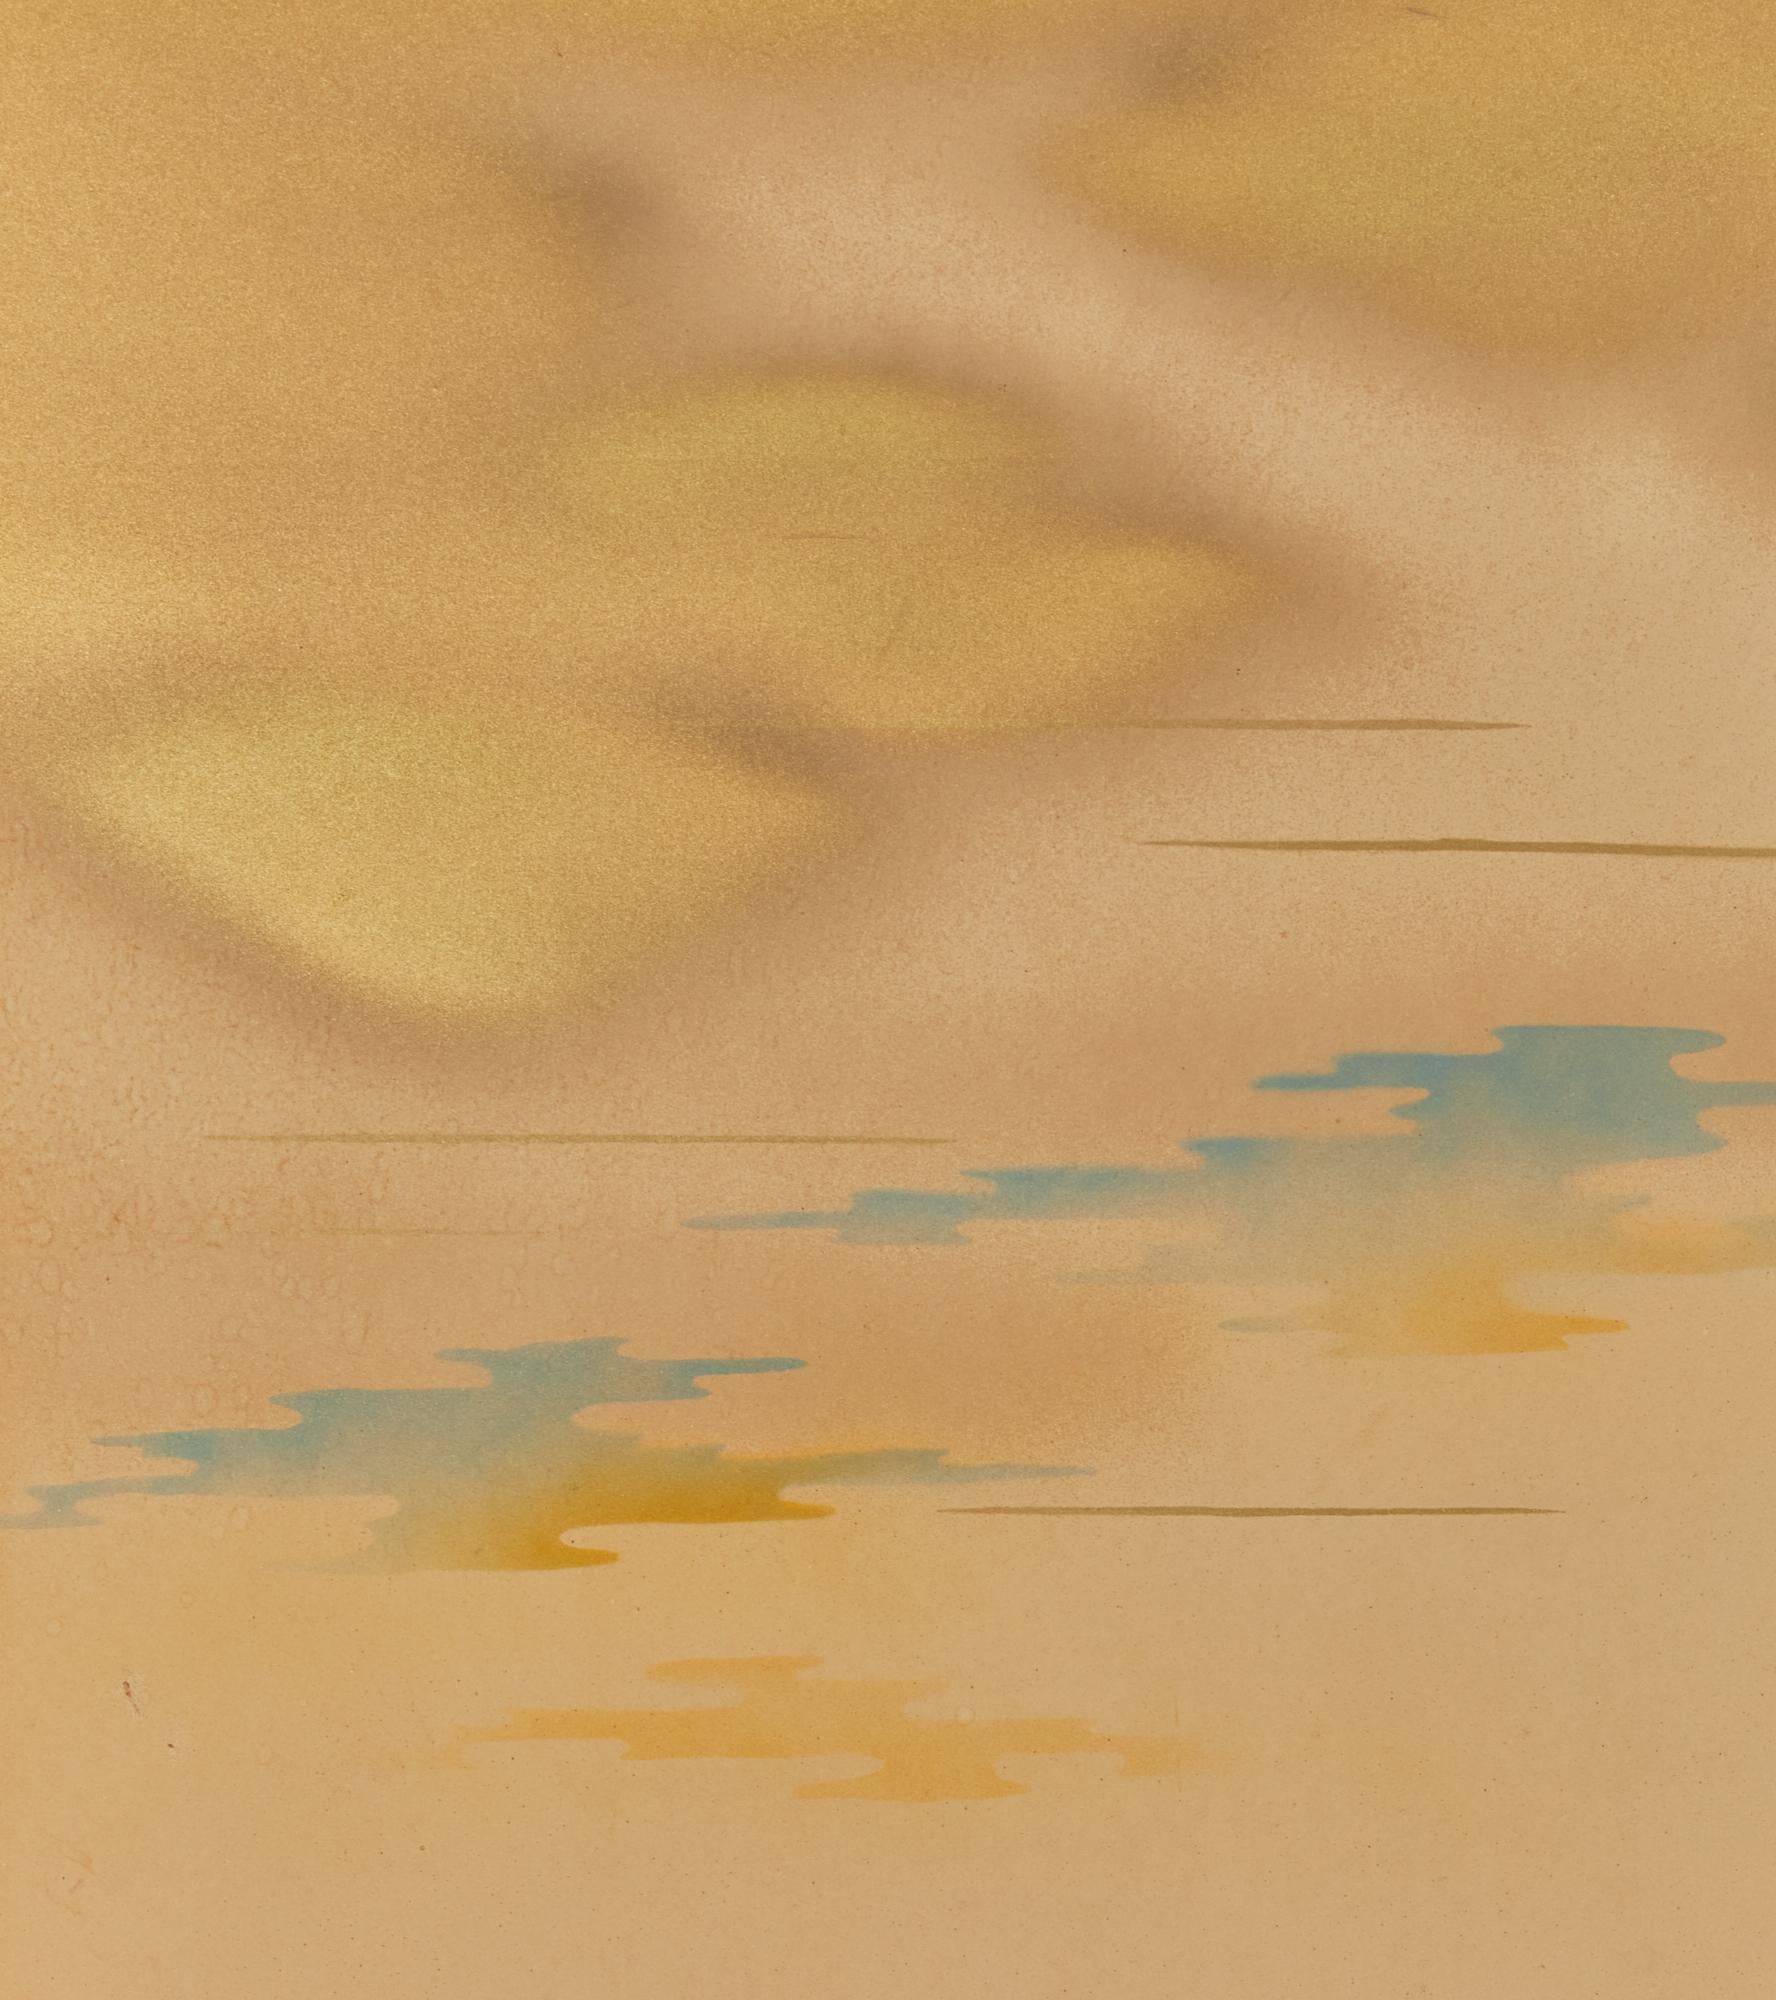 Wolkenformation in Gold mit blauem Himmel in Mineralpigmenten auf Maulbeerpapier mit schwarzem Lackrand.  